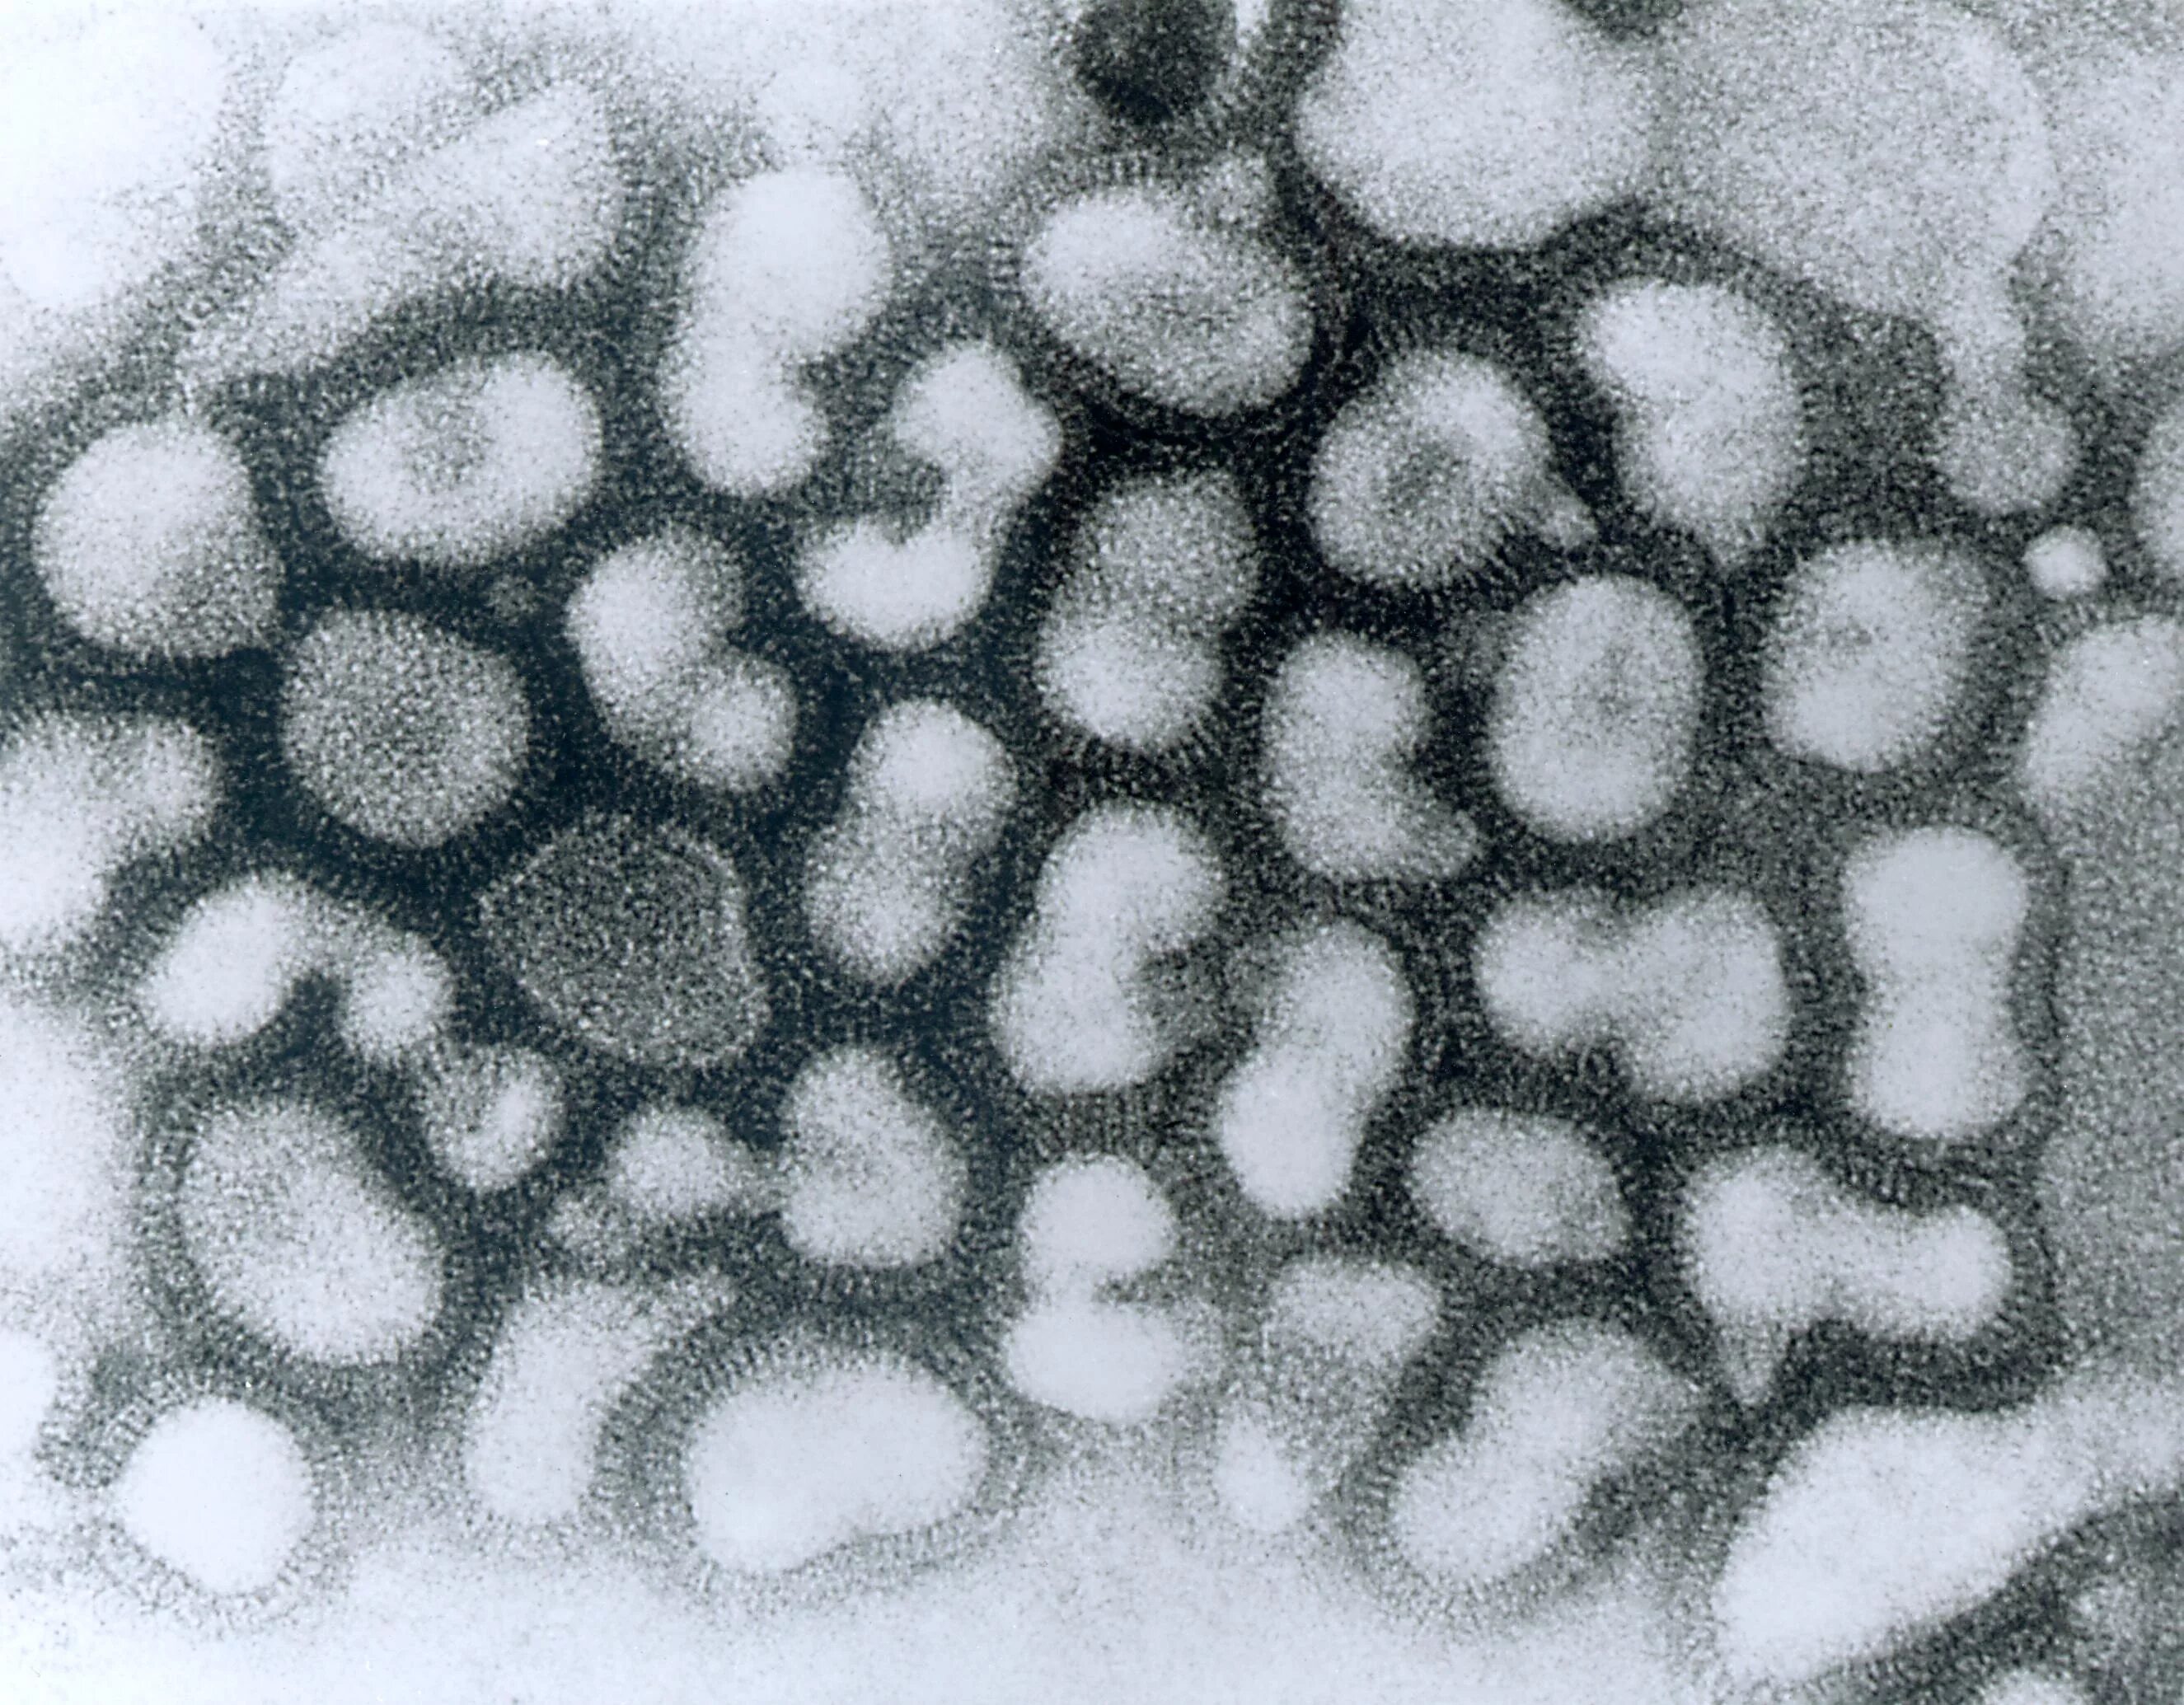 Вирус гриппа под. Вирус гриппа микрофотография. Вирус h5n1. Электронная микрофотография вируса гриппа а. Вирус птичьего гриппа под микроскопом.